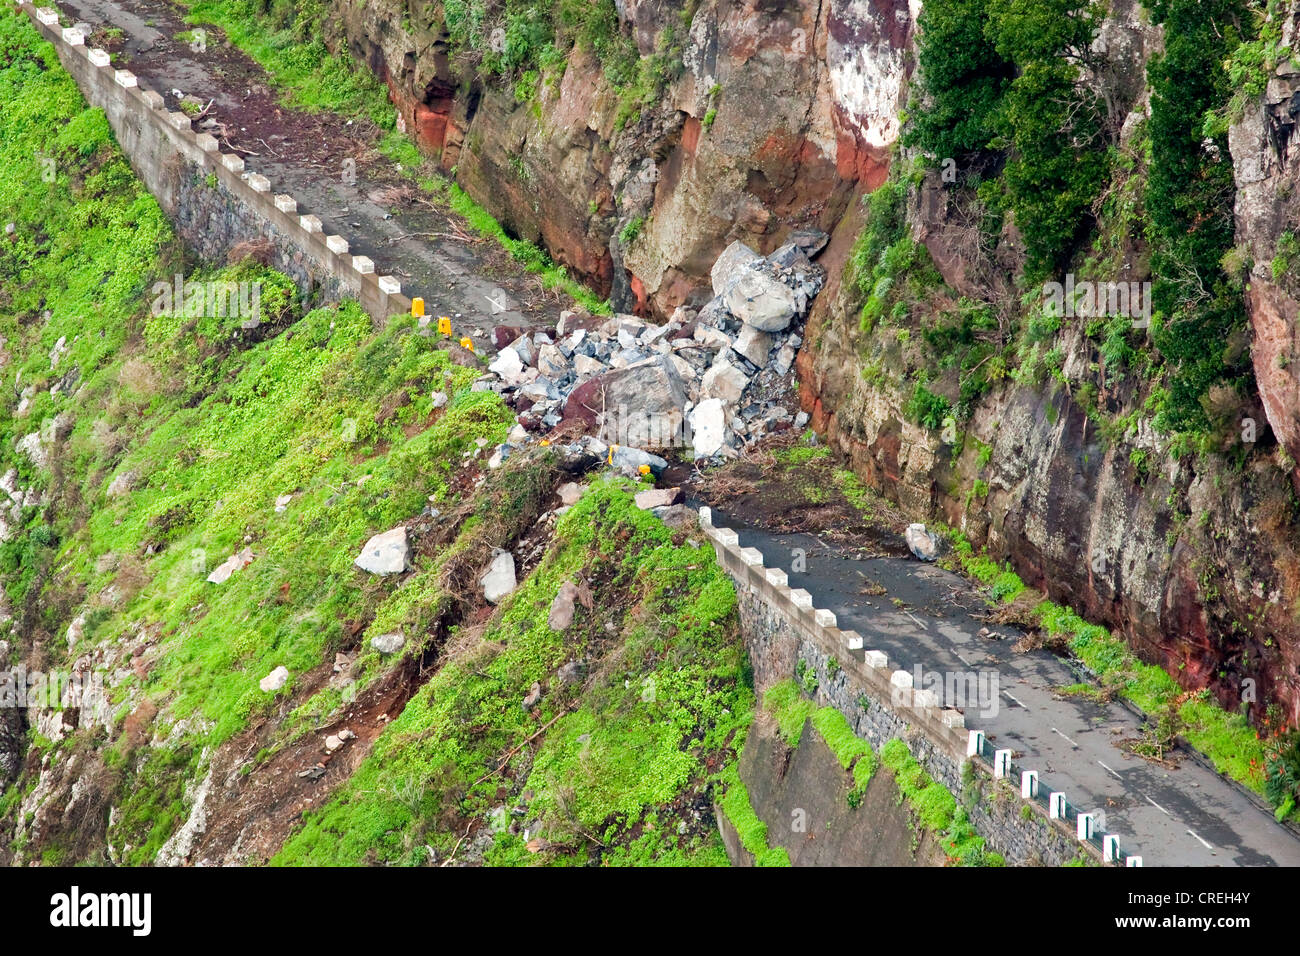 Straße gesperrt durch einen Erdrutsch, Corral von den Nonnen oder Curral Das Freiras, Madeira, Portugal, Europa Stockfoto